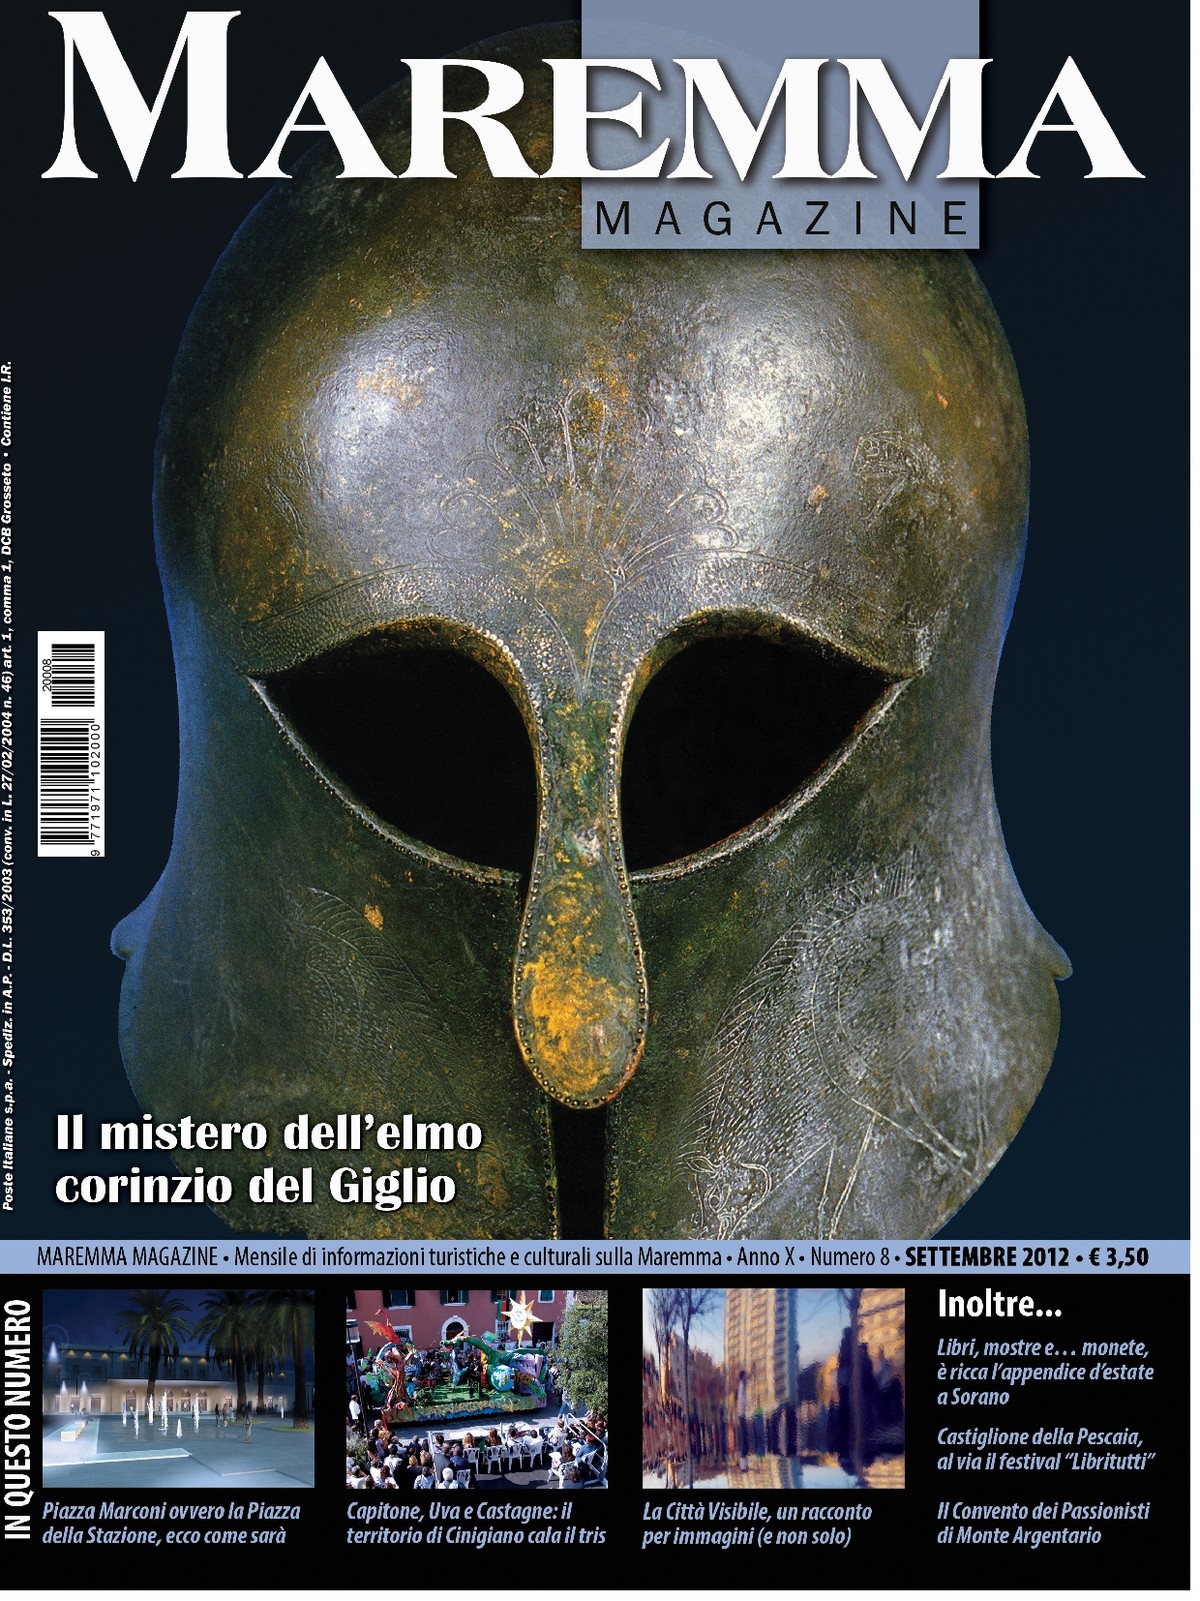 Maremma Magazine - MARZO 2013 - Numero 2 - [CS Edizioni srl]